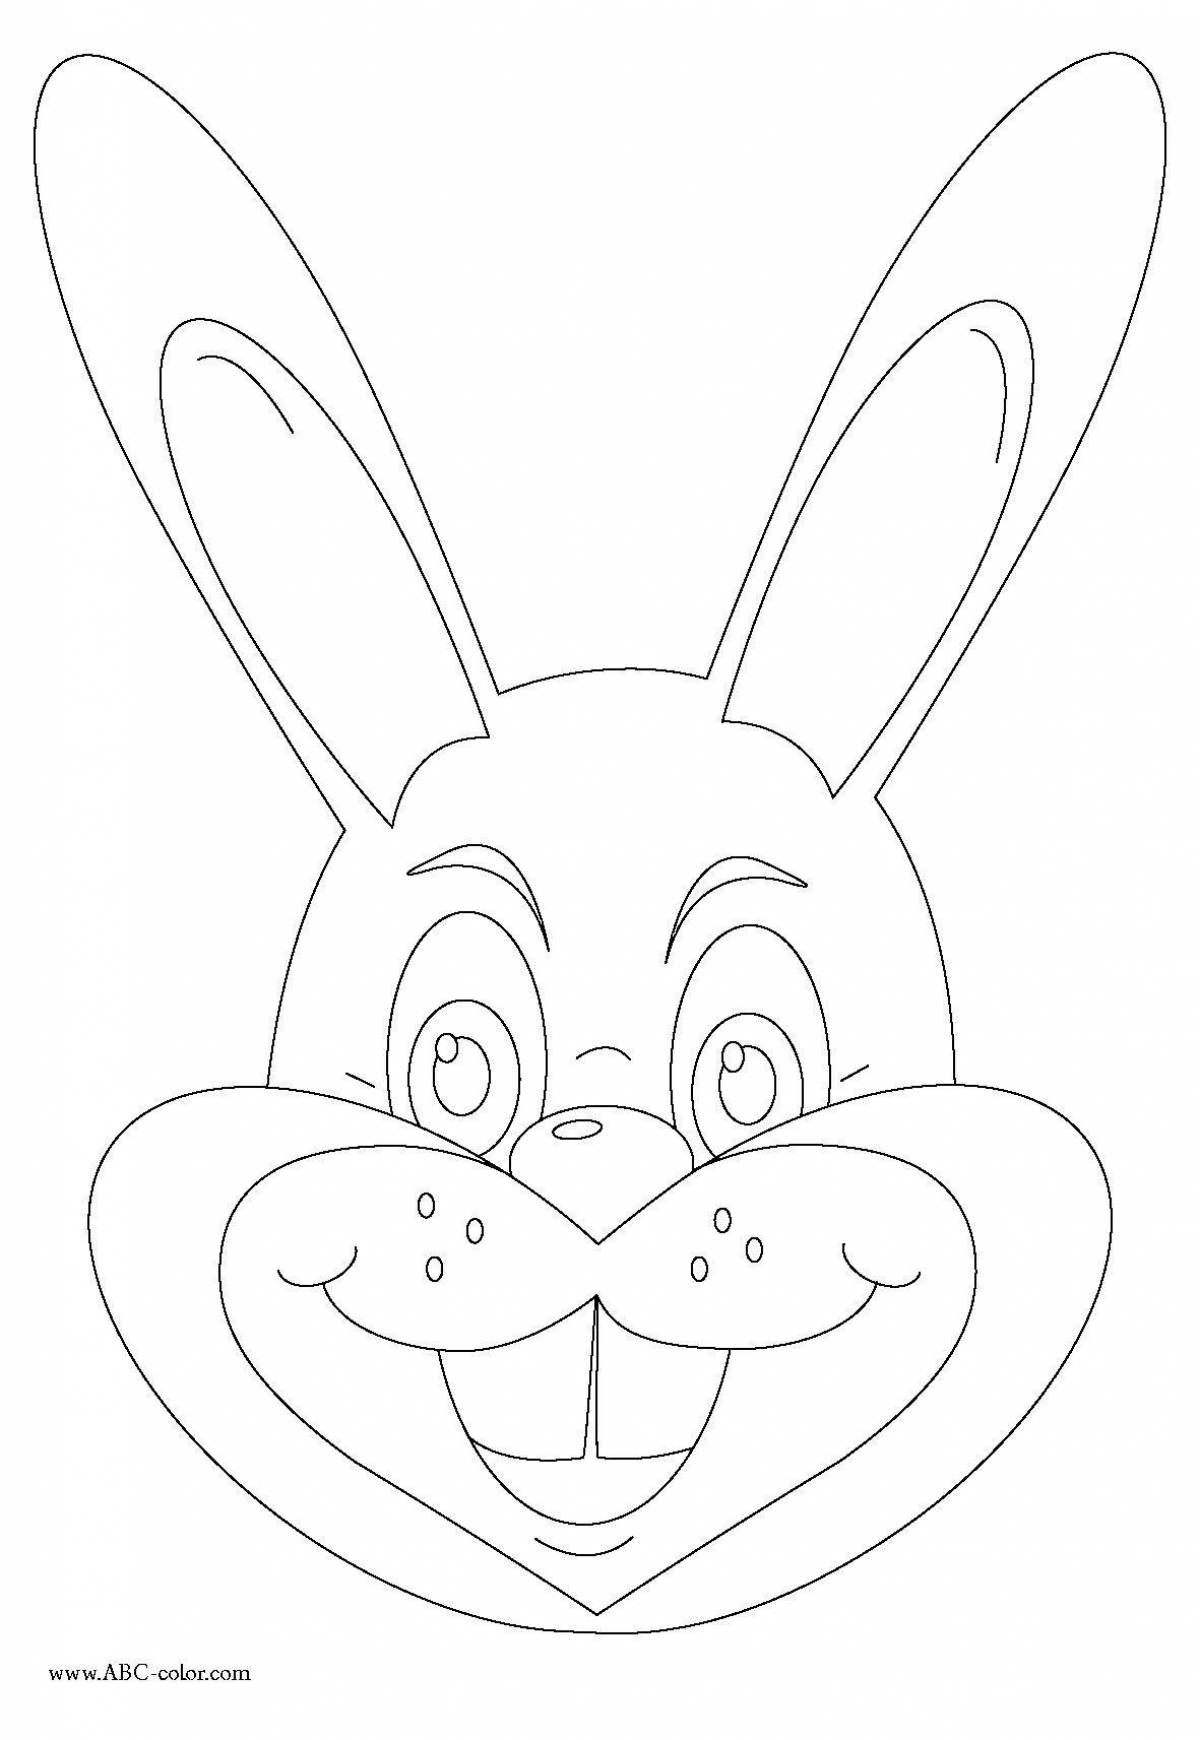 Humorous rabbit head coloring book